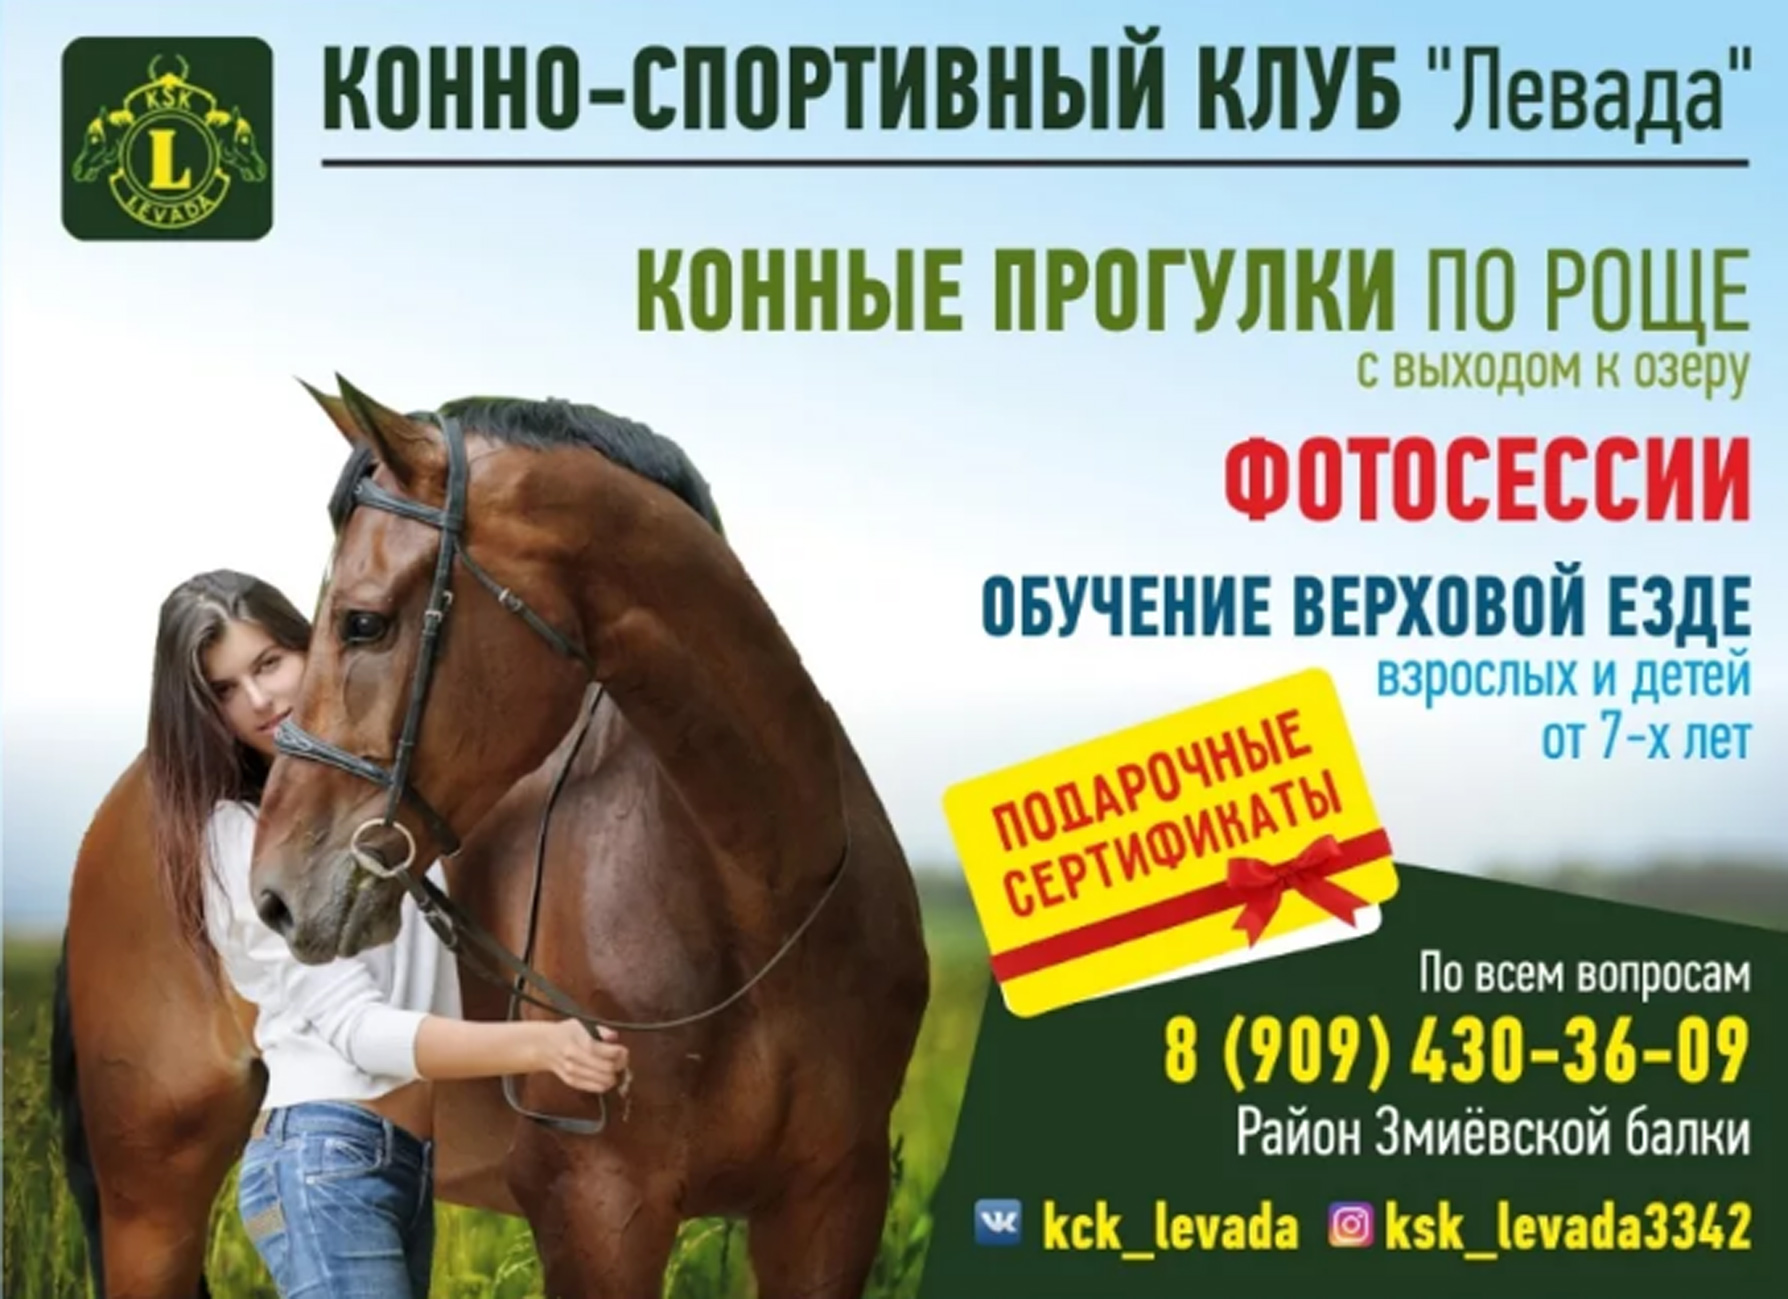 Каталог магазина кск. Реклама конного клуба. Конные прогулки реклама. Реклама конного спорта. Конно-спортивный клуб реклама.